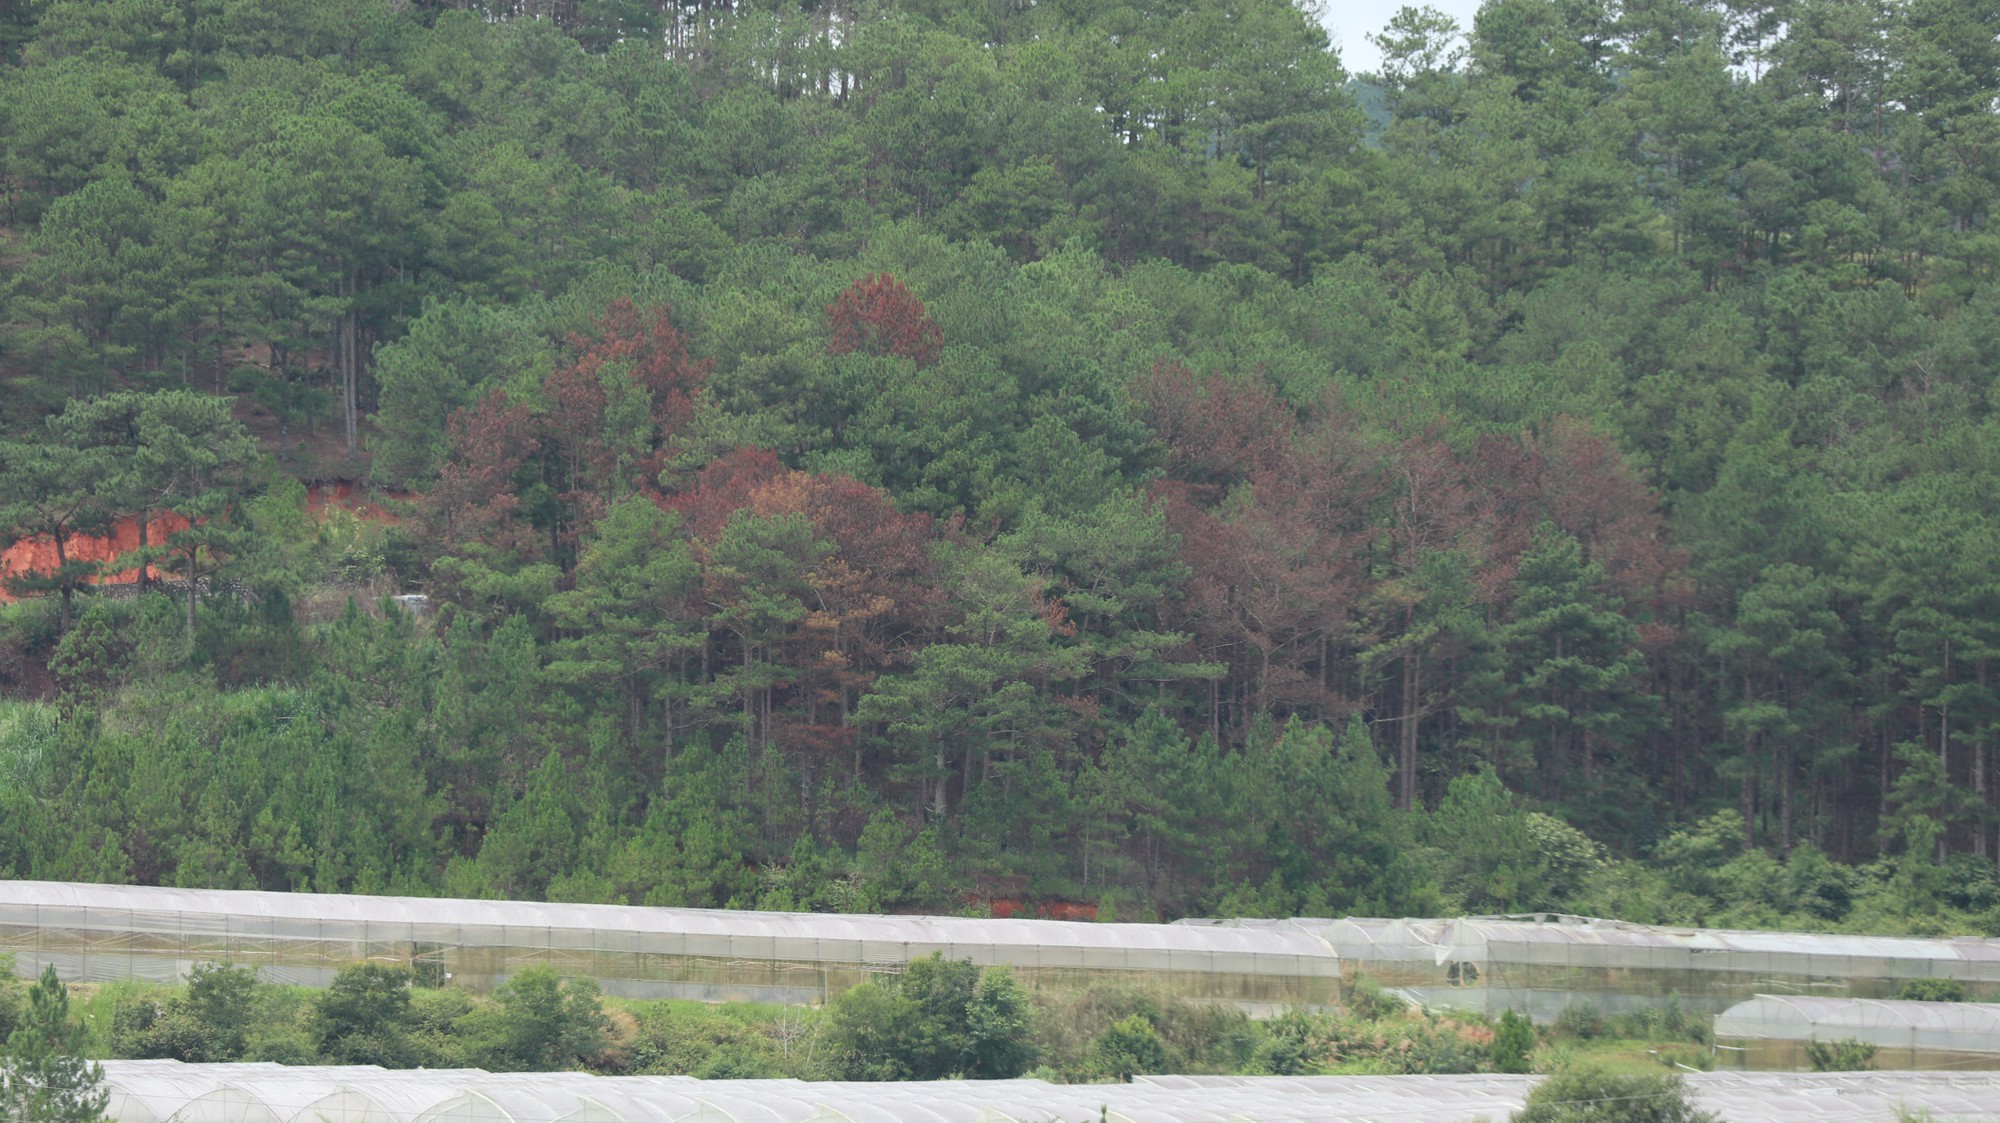 Kiểm điểm 1 tập thể, 3 cá nhân nhân liên quan vụ rừng thông bị “đầu độc” tại Lâm Đồng - Ảnh 3.